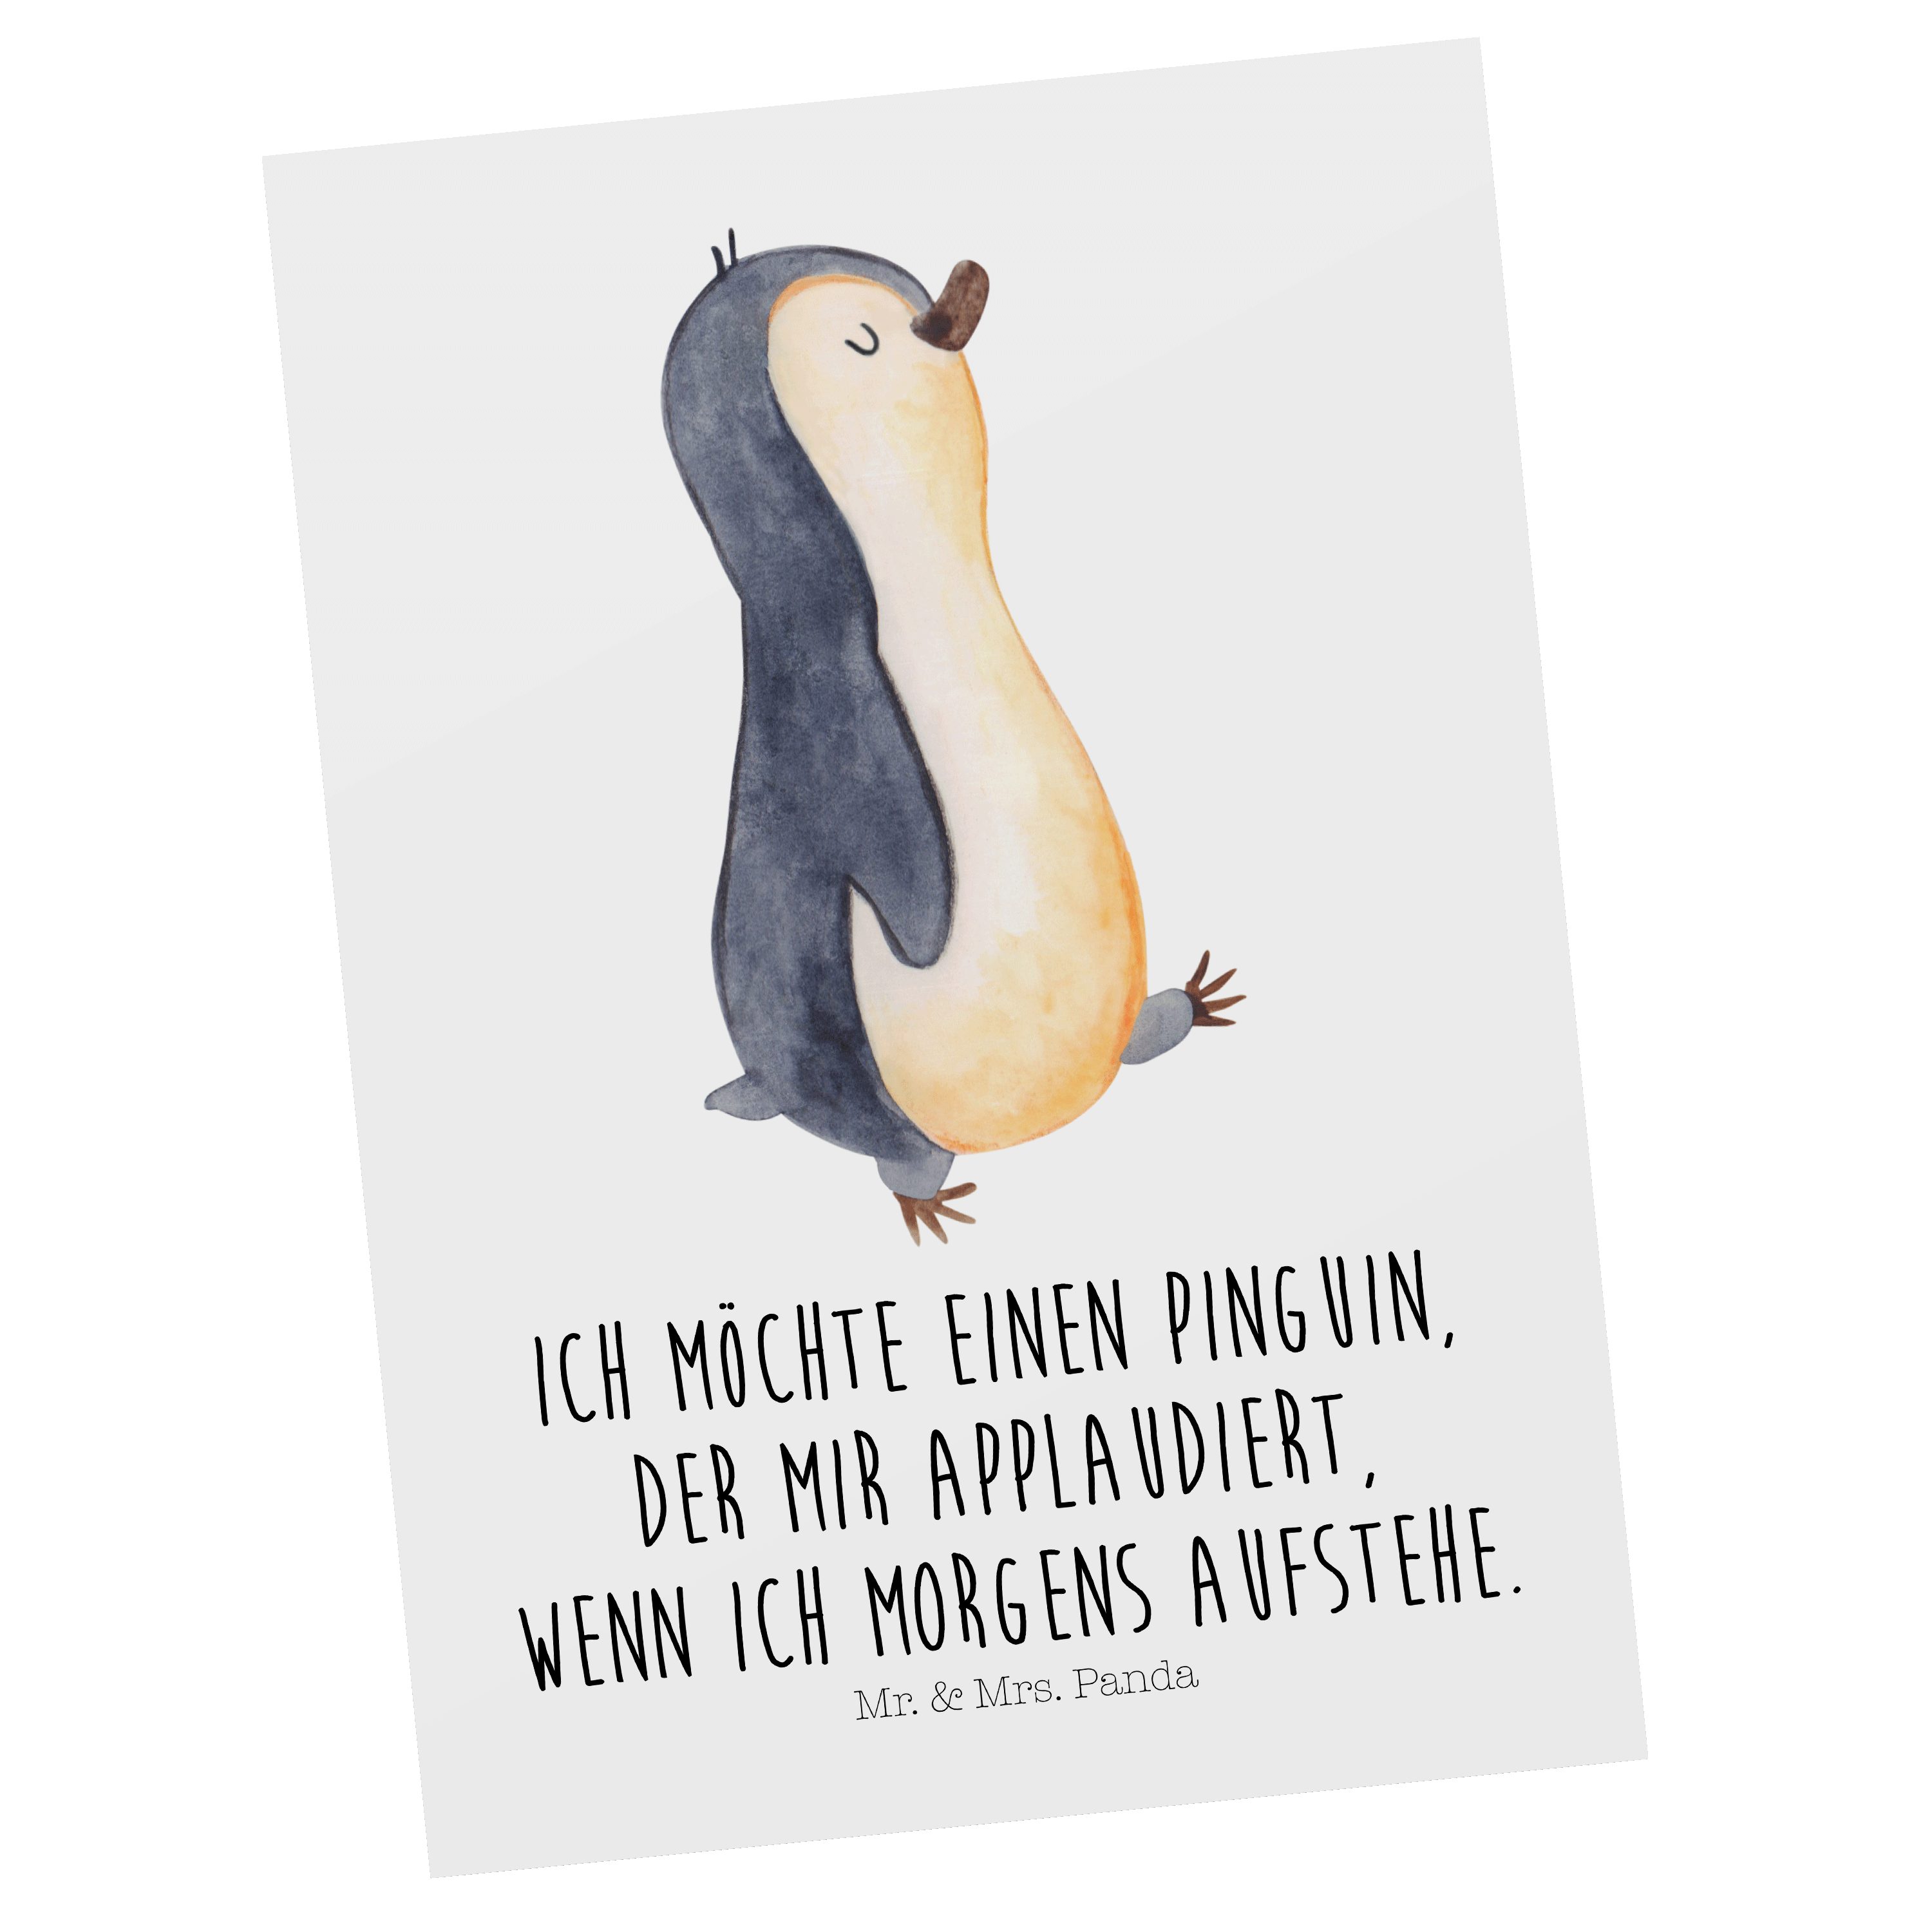 Mr. & Mrs. Panda Postkarte Pinguin marschierend - Weiß - Geschenk, Familie, Grußkarte, Pinguine